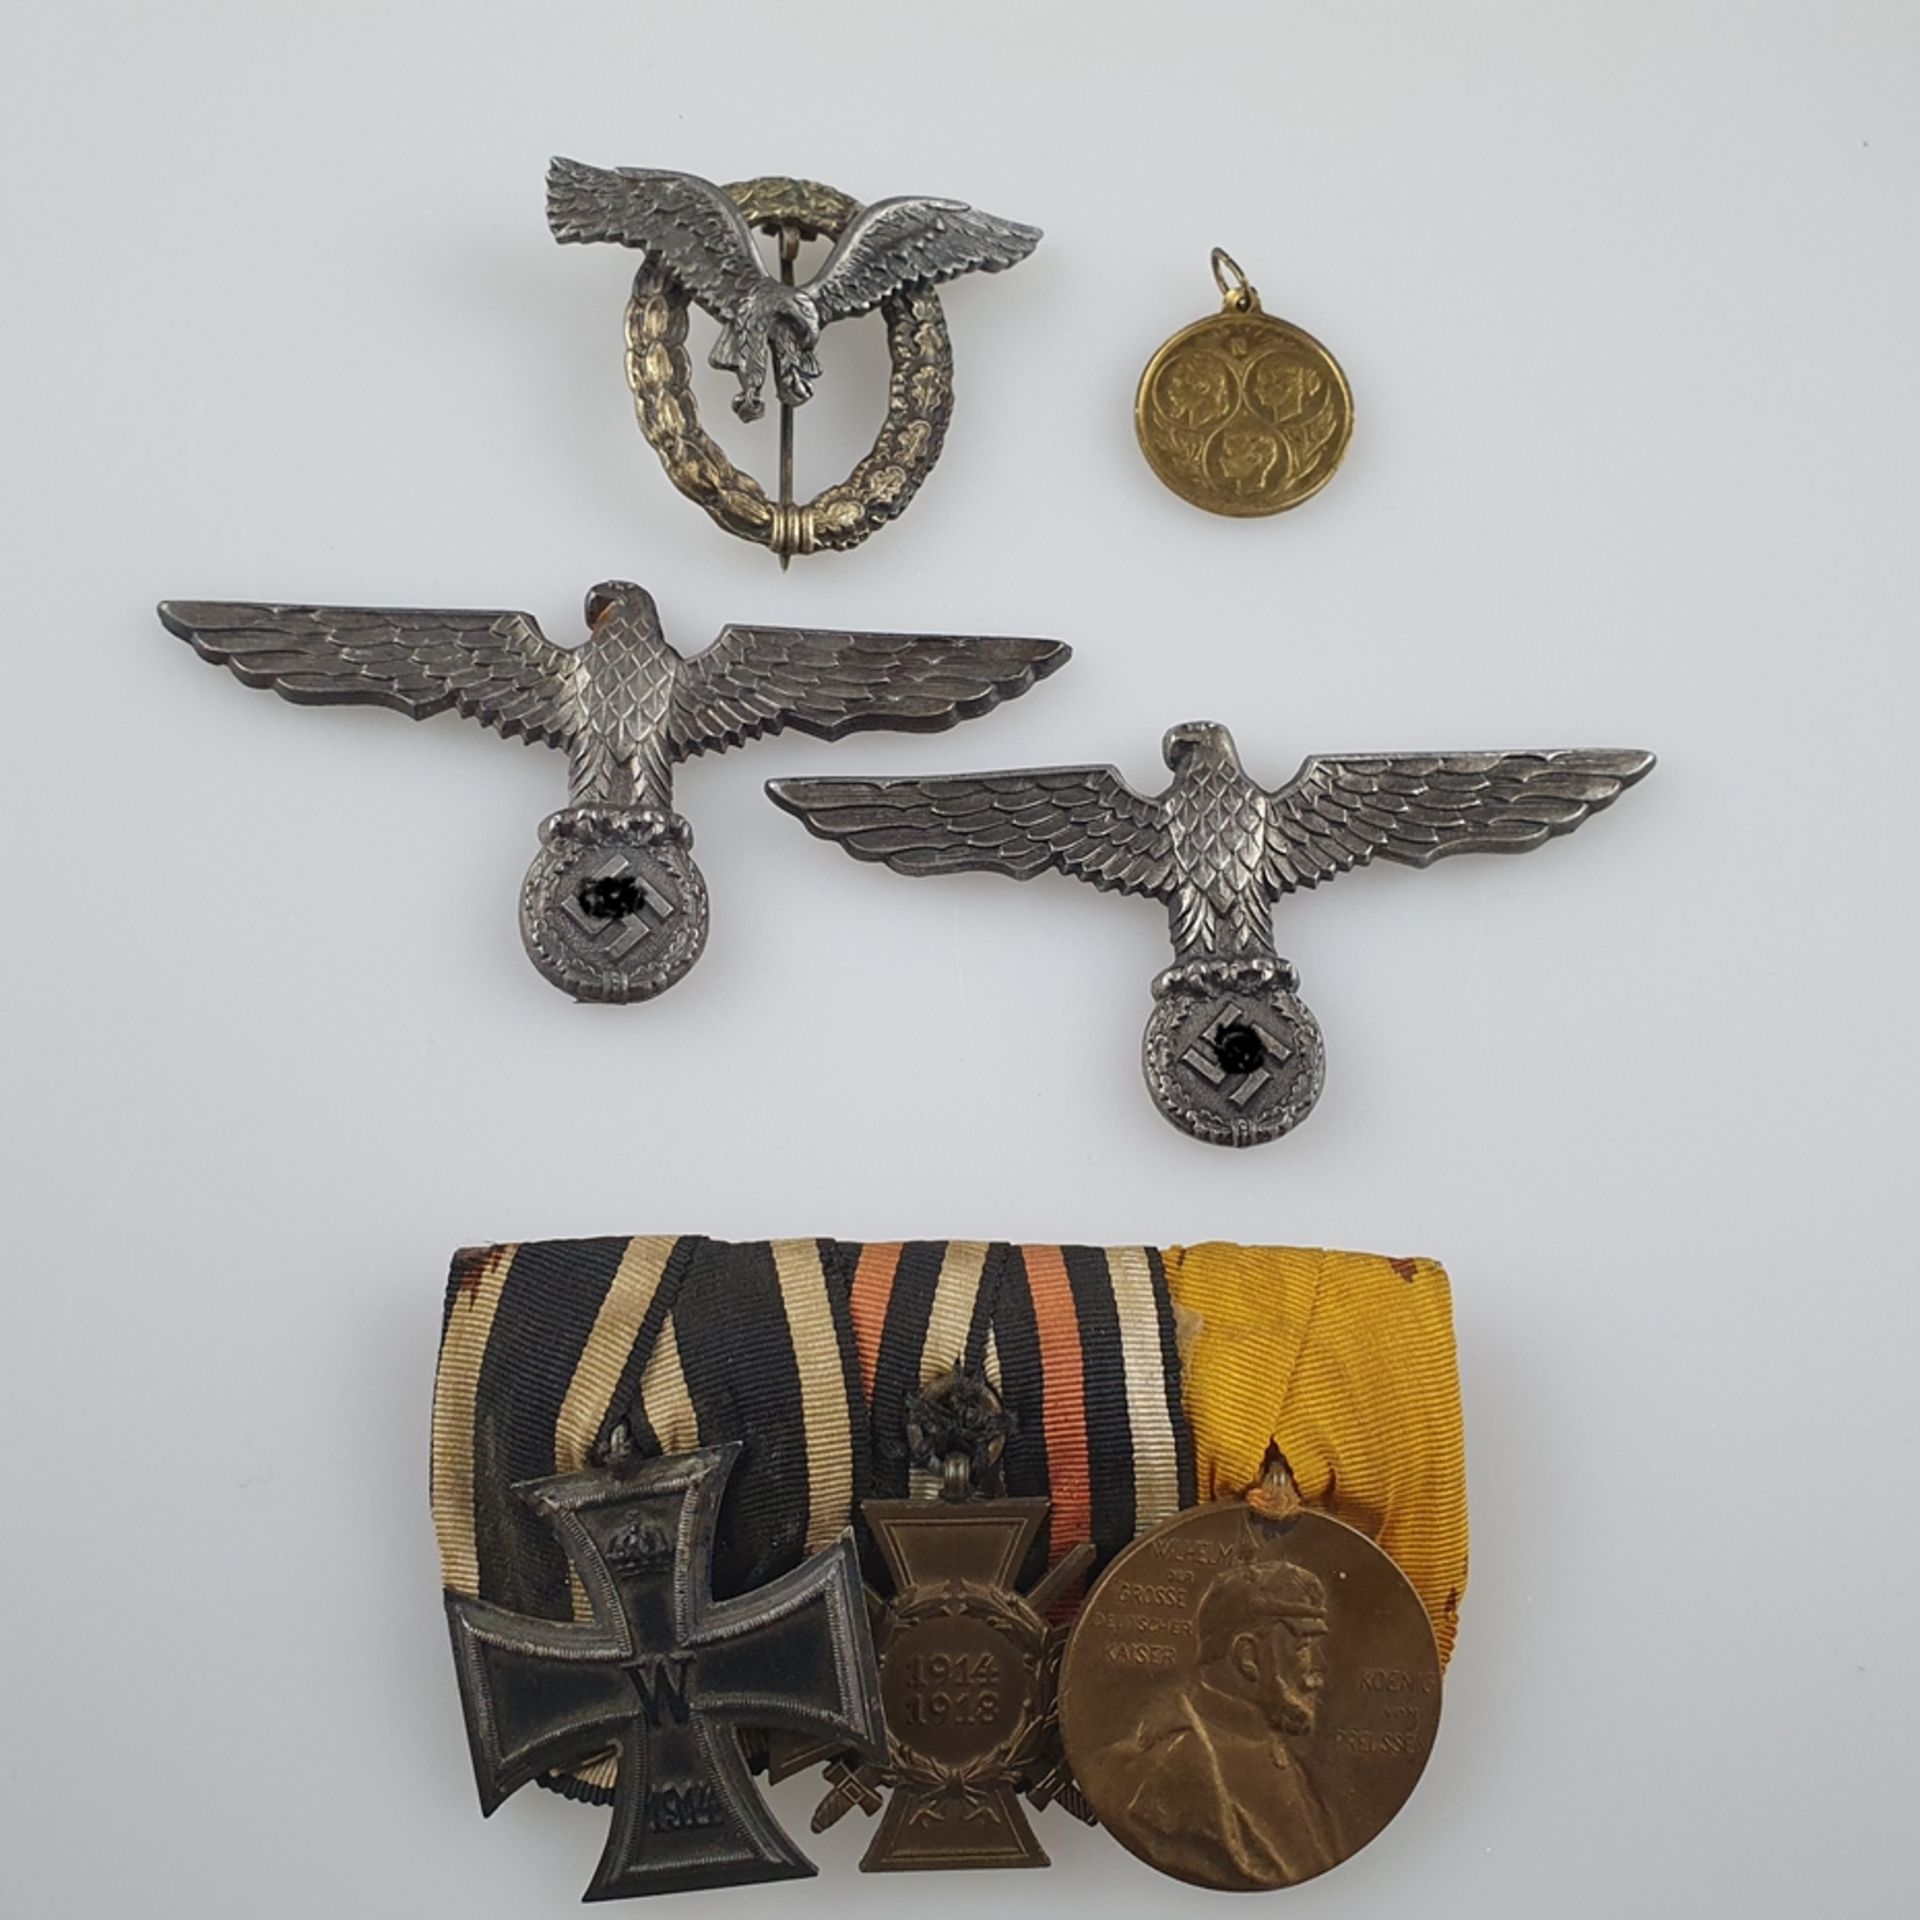 Konvolut Orden/Abzeichen - Ordensspange mit 3 Orden: Eisernes Kreuz 1914 - Ehrenkreuz des I. Weltkr